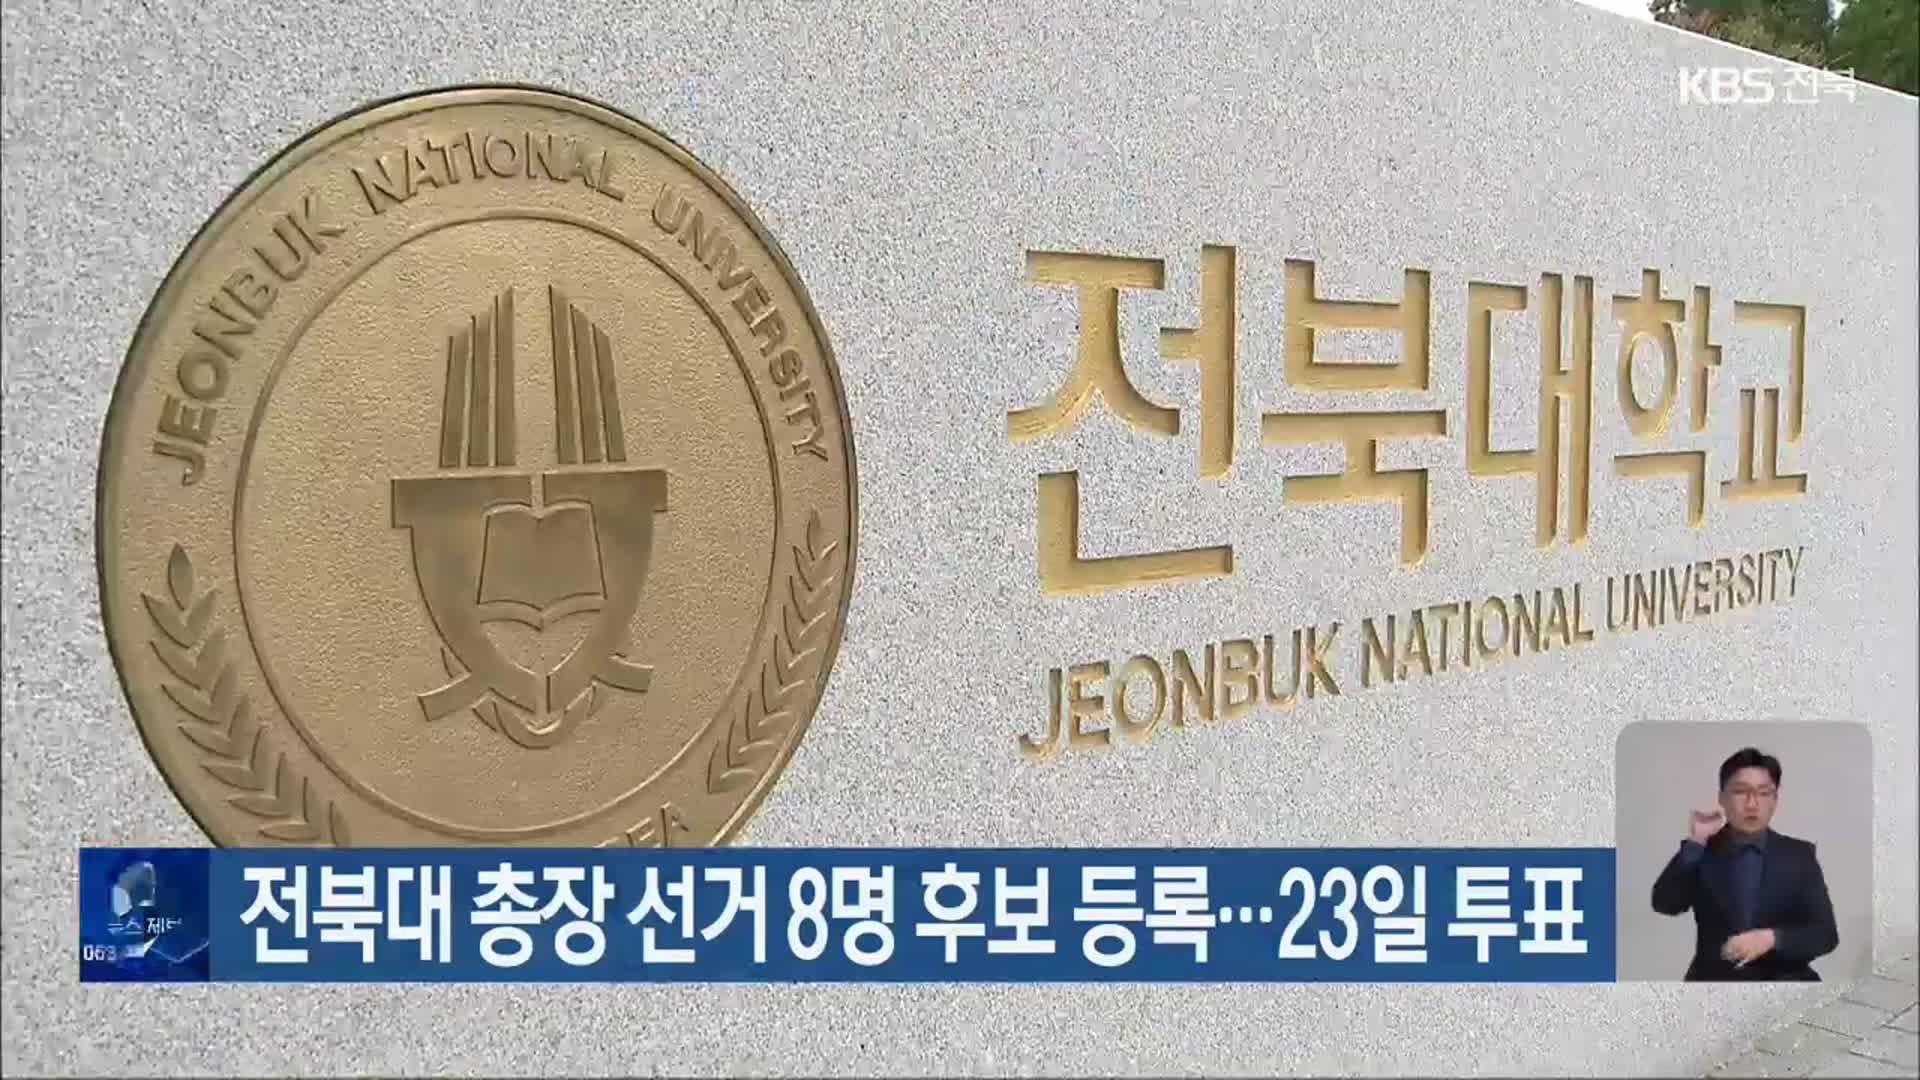 전북대 총장 선거 8명 후보 등록…23일 투표